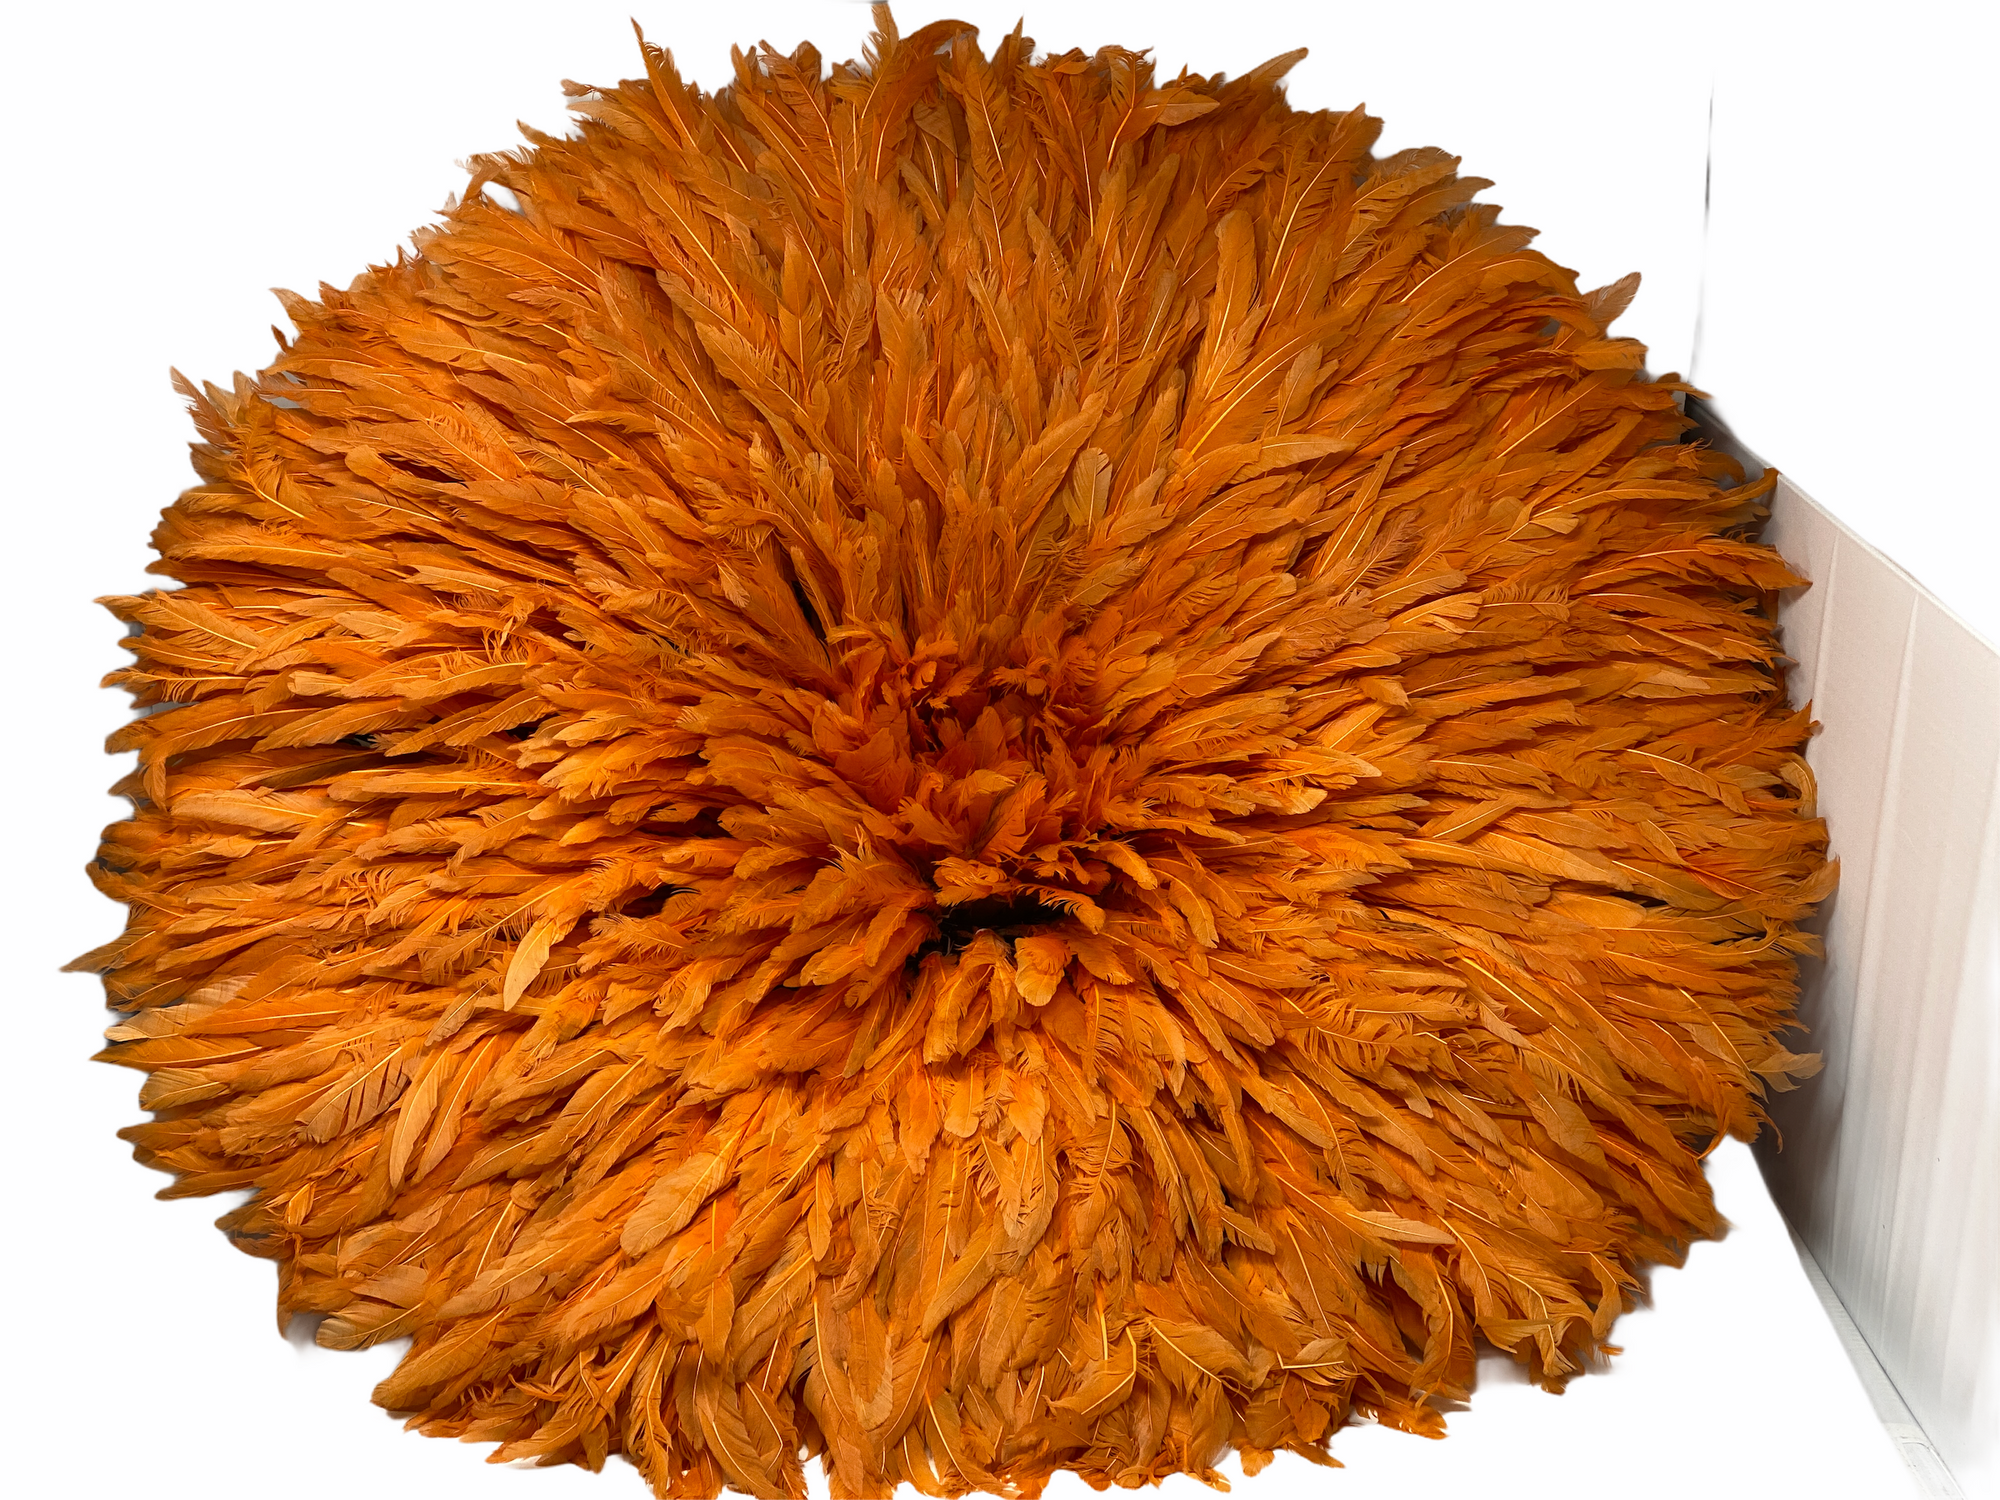 Juju Hat - Orange feathers - 70cm